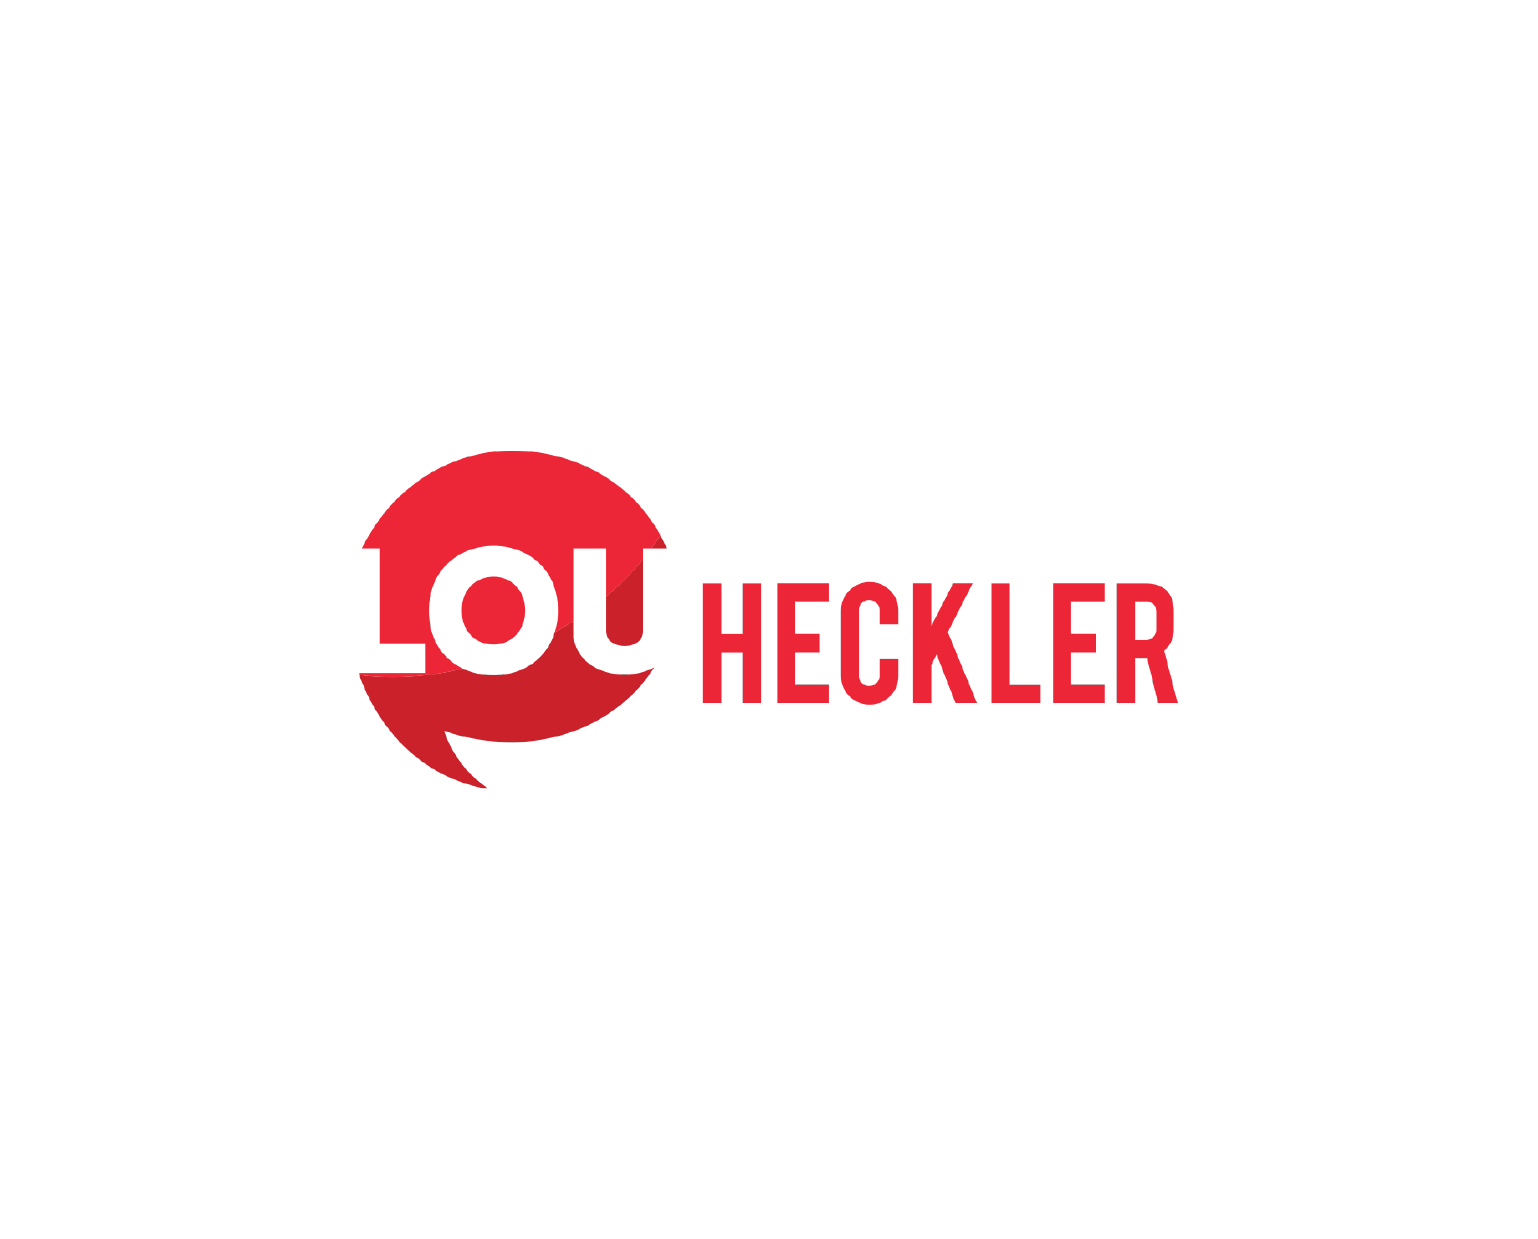 Lou Heckler - Brand Development and Logo Design